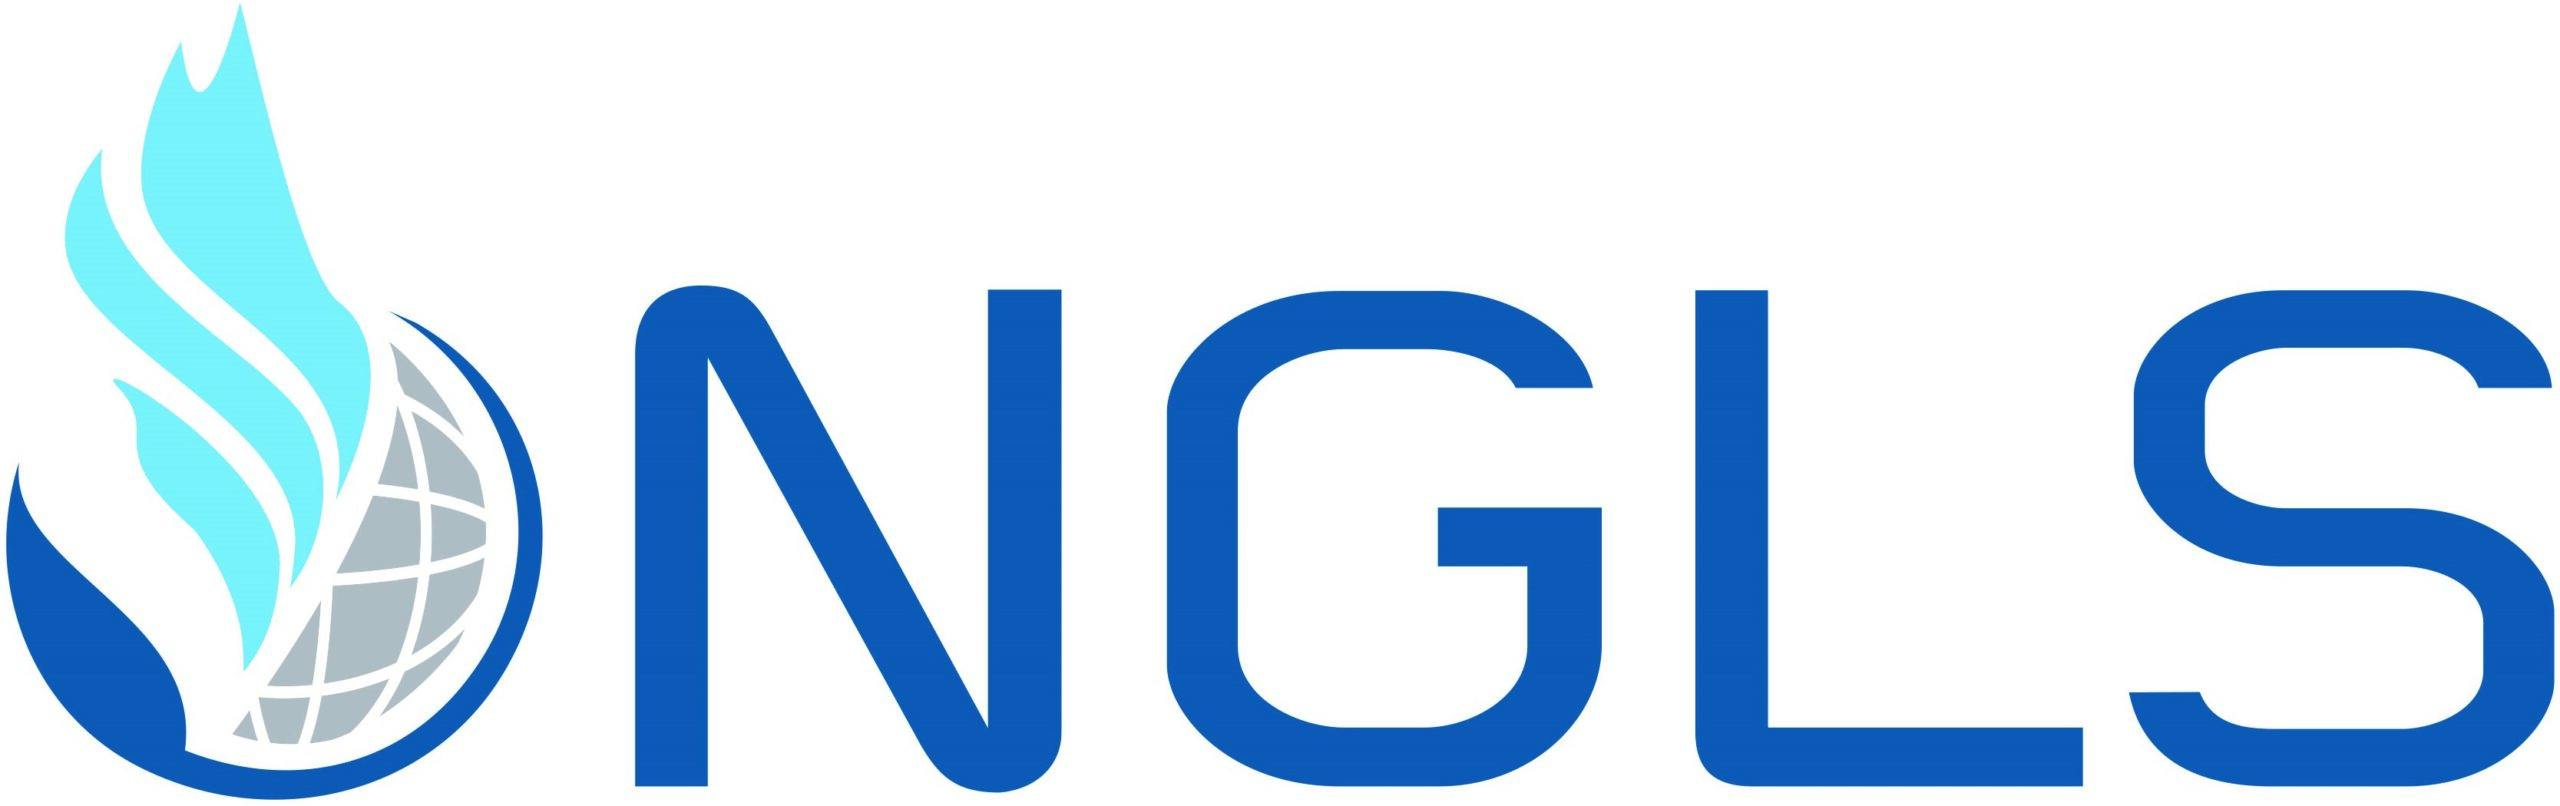 NGLStrategy Logo